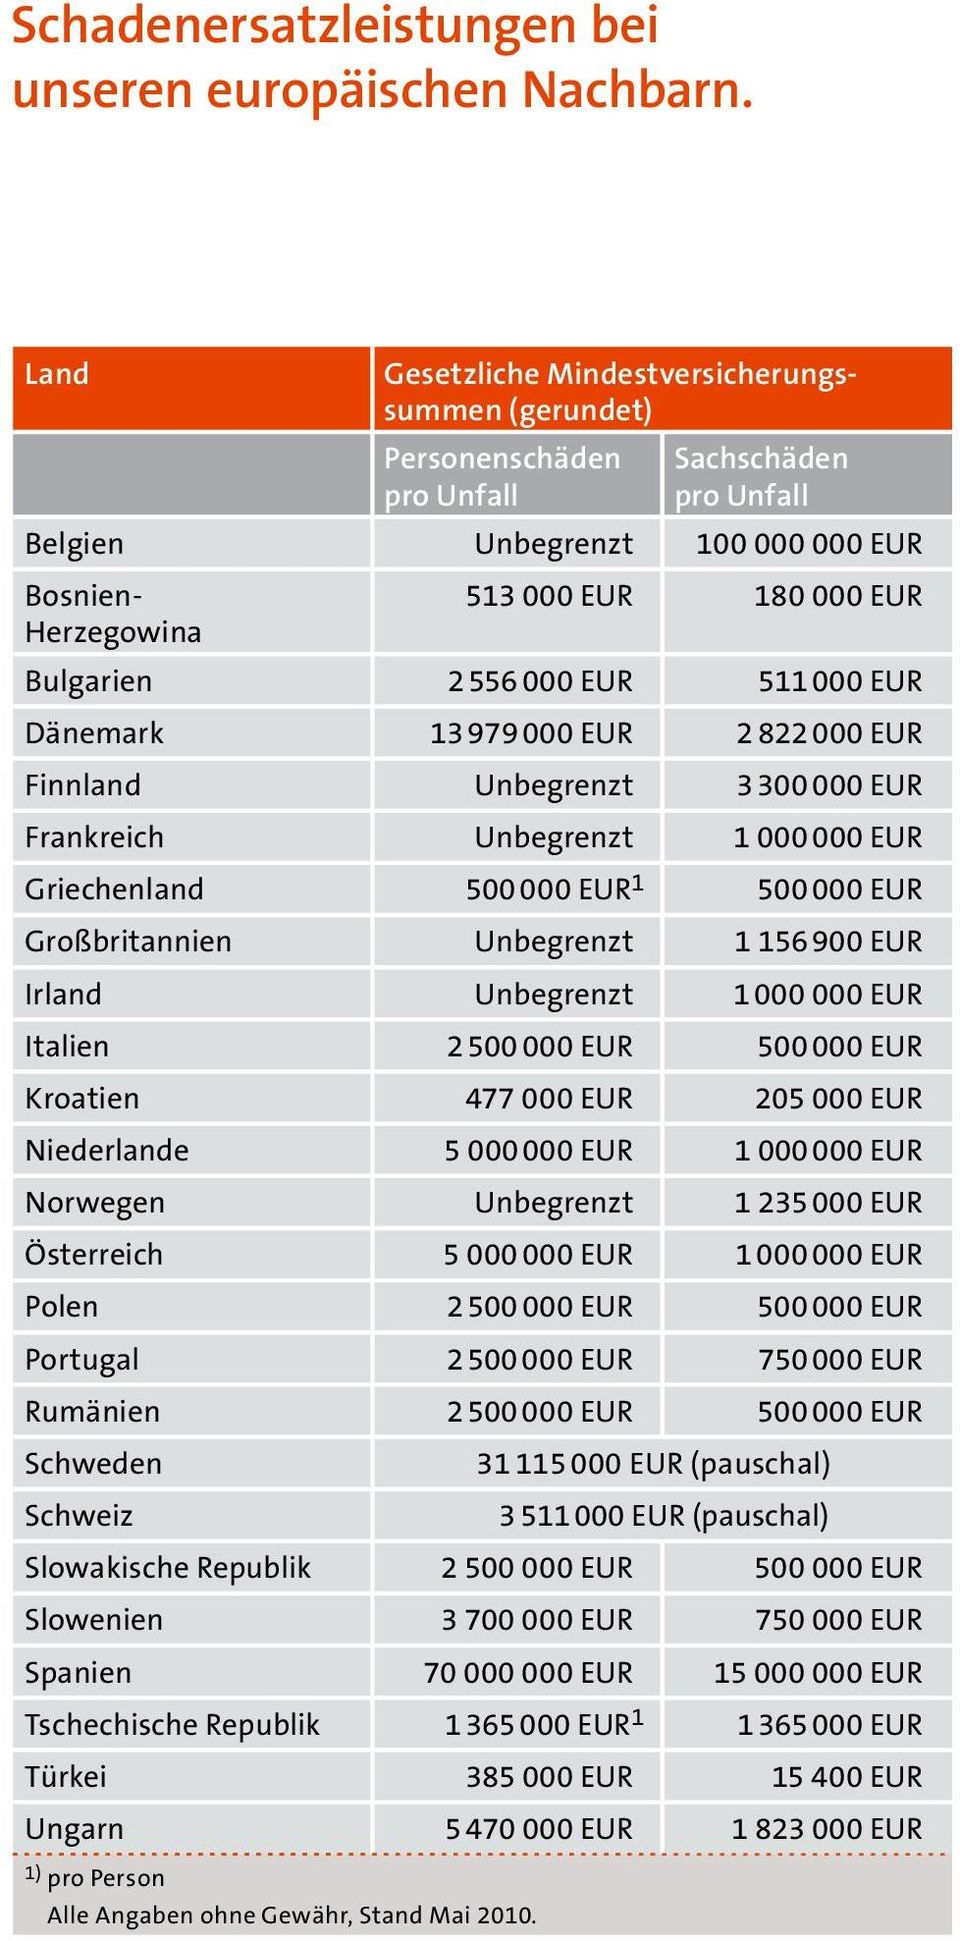 556 000 EUR 511 000 EUR Dänemark 13 979 000 EUR 2 822 000 EUR Finnland Unbegrenzt 3 300 000 EUR Frankreich Unbegrenzt 1 000 000 EUR Griechenland 500 000 EUR 1 500 000 EUR Großbritannien Unbegrenzt 1